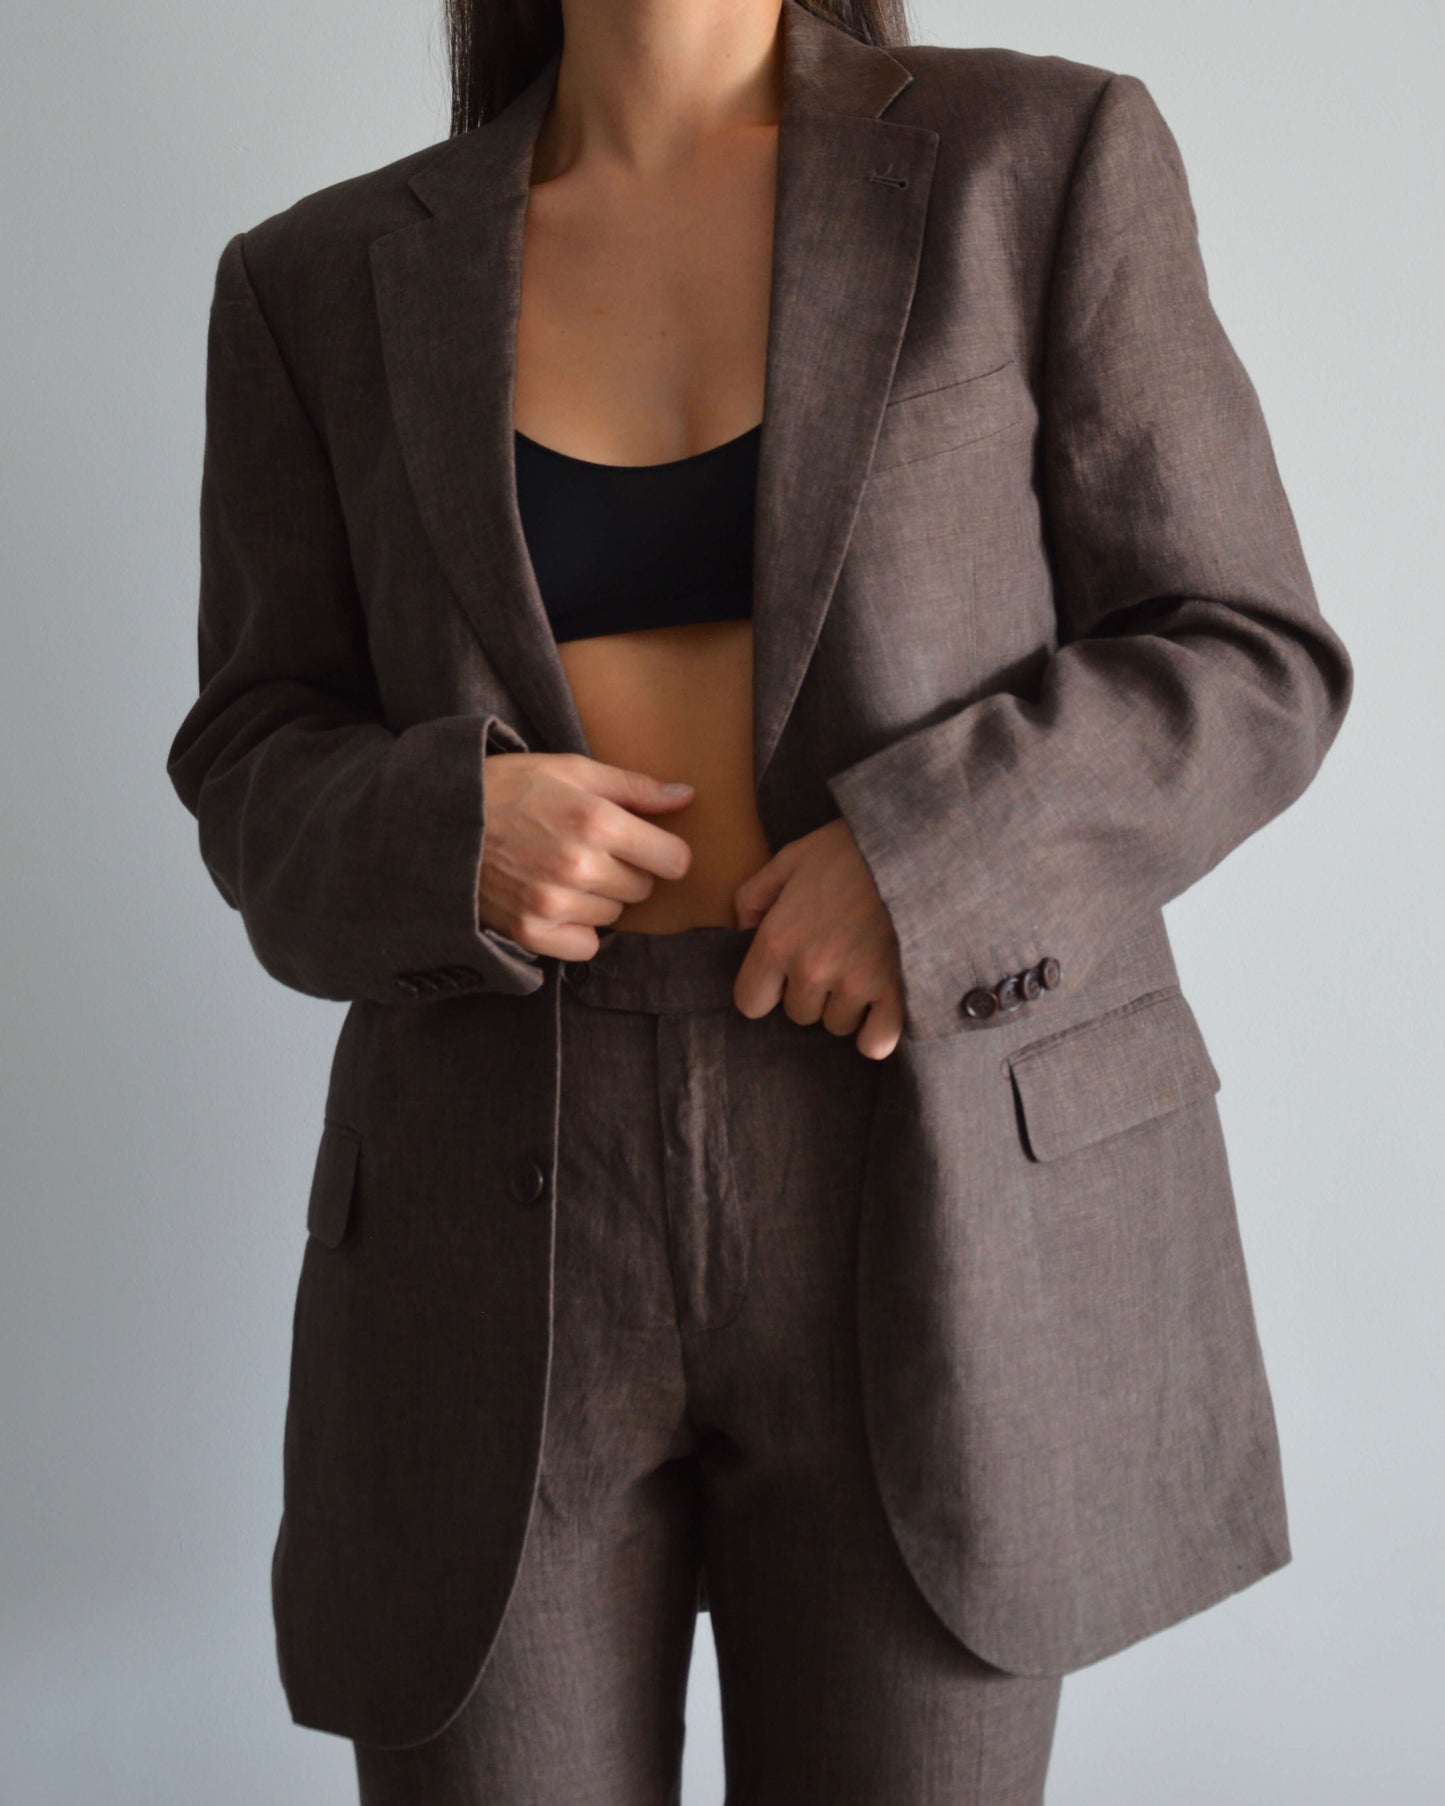 Vegan Suit - Brown Linen (XS/M)